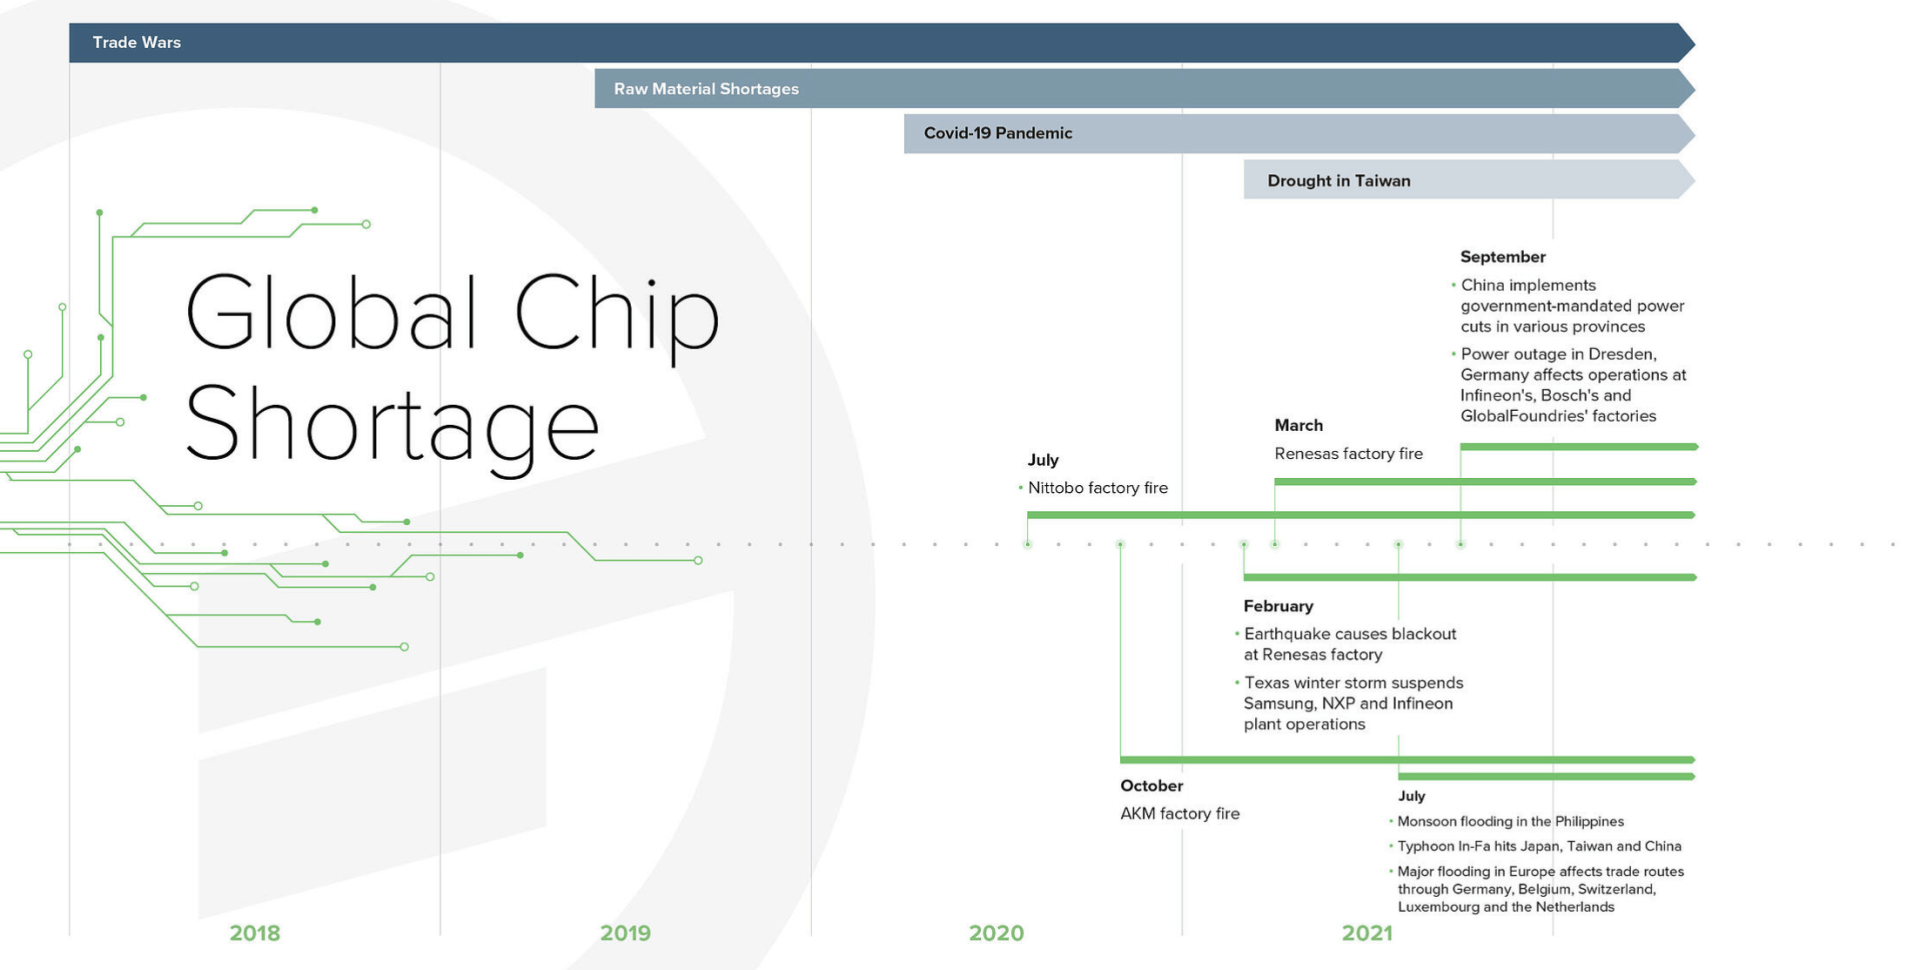 Global Chip Shortage Timeline